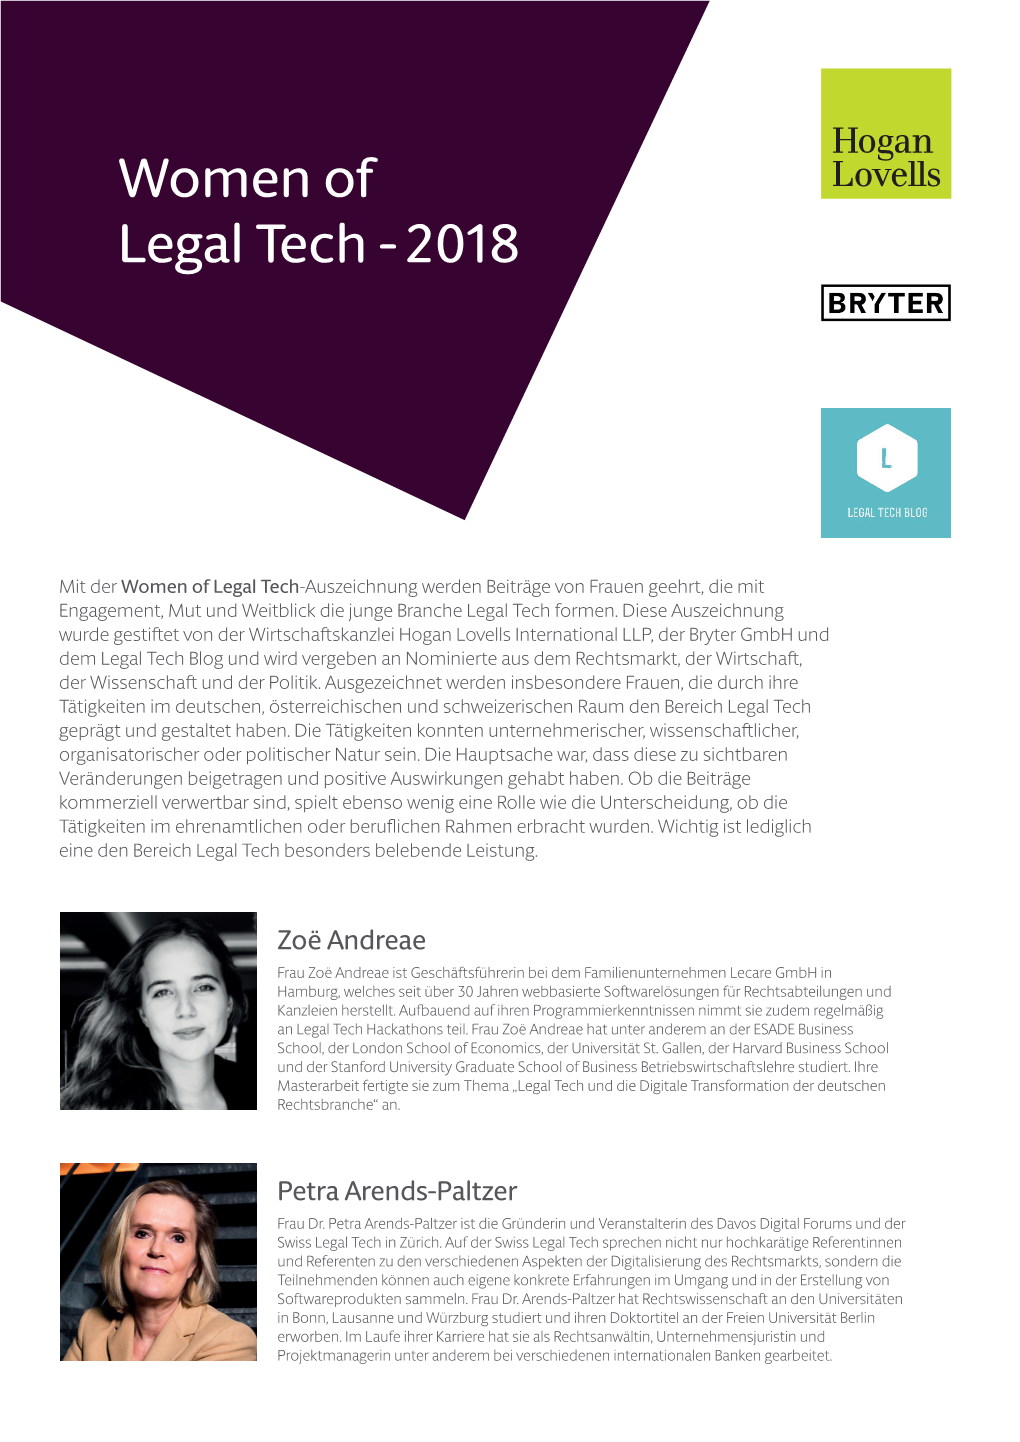 Women of Legal Tech - 2018